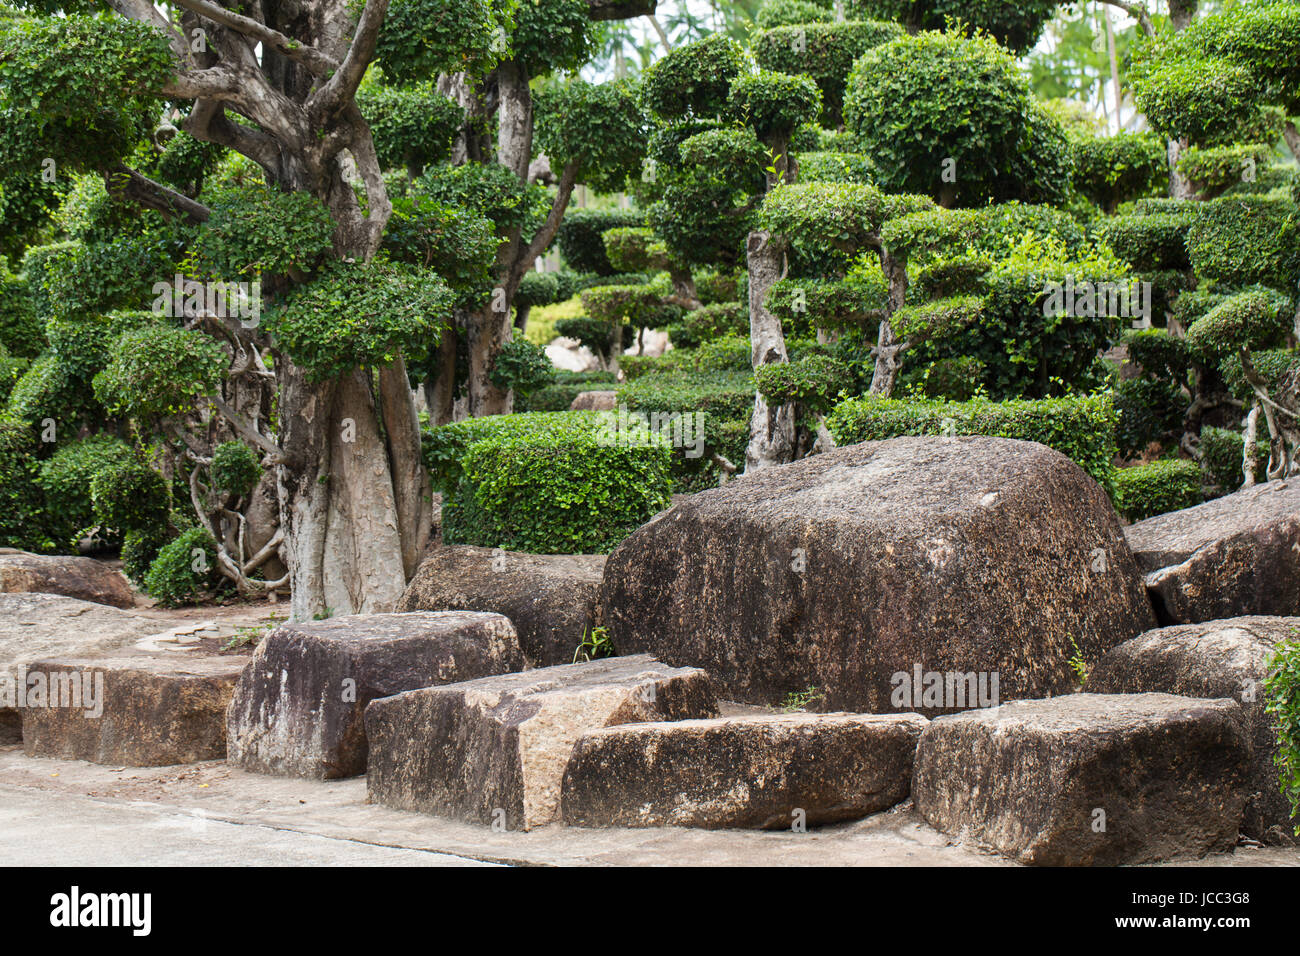 Japanischer Garten mit Bonsaibäumchen Stock Photo